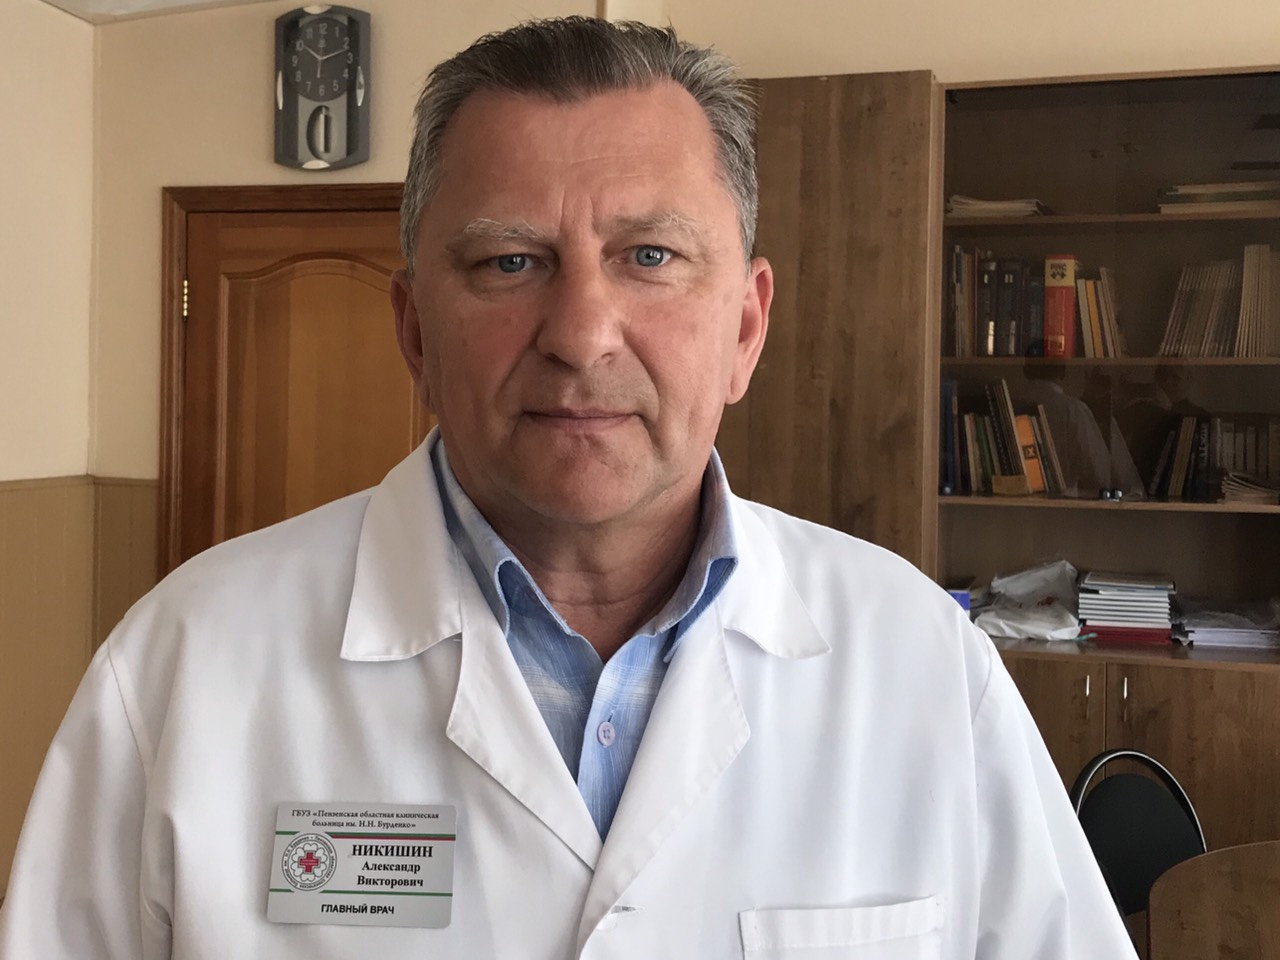 "Никаких изменений": пензенский министр о ковид-вакцине